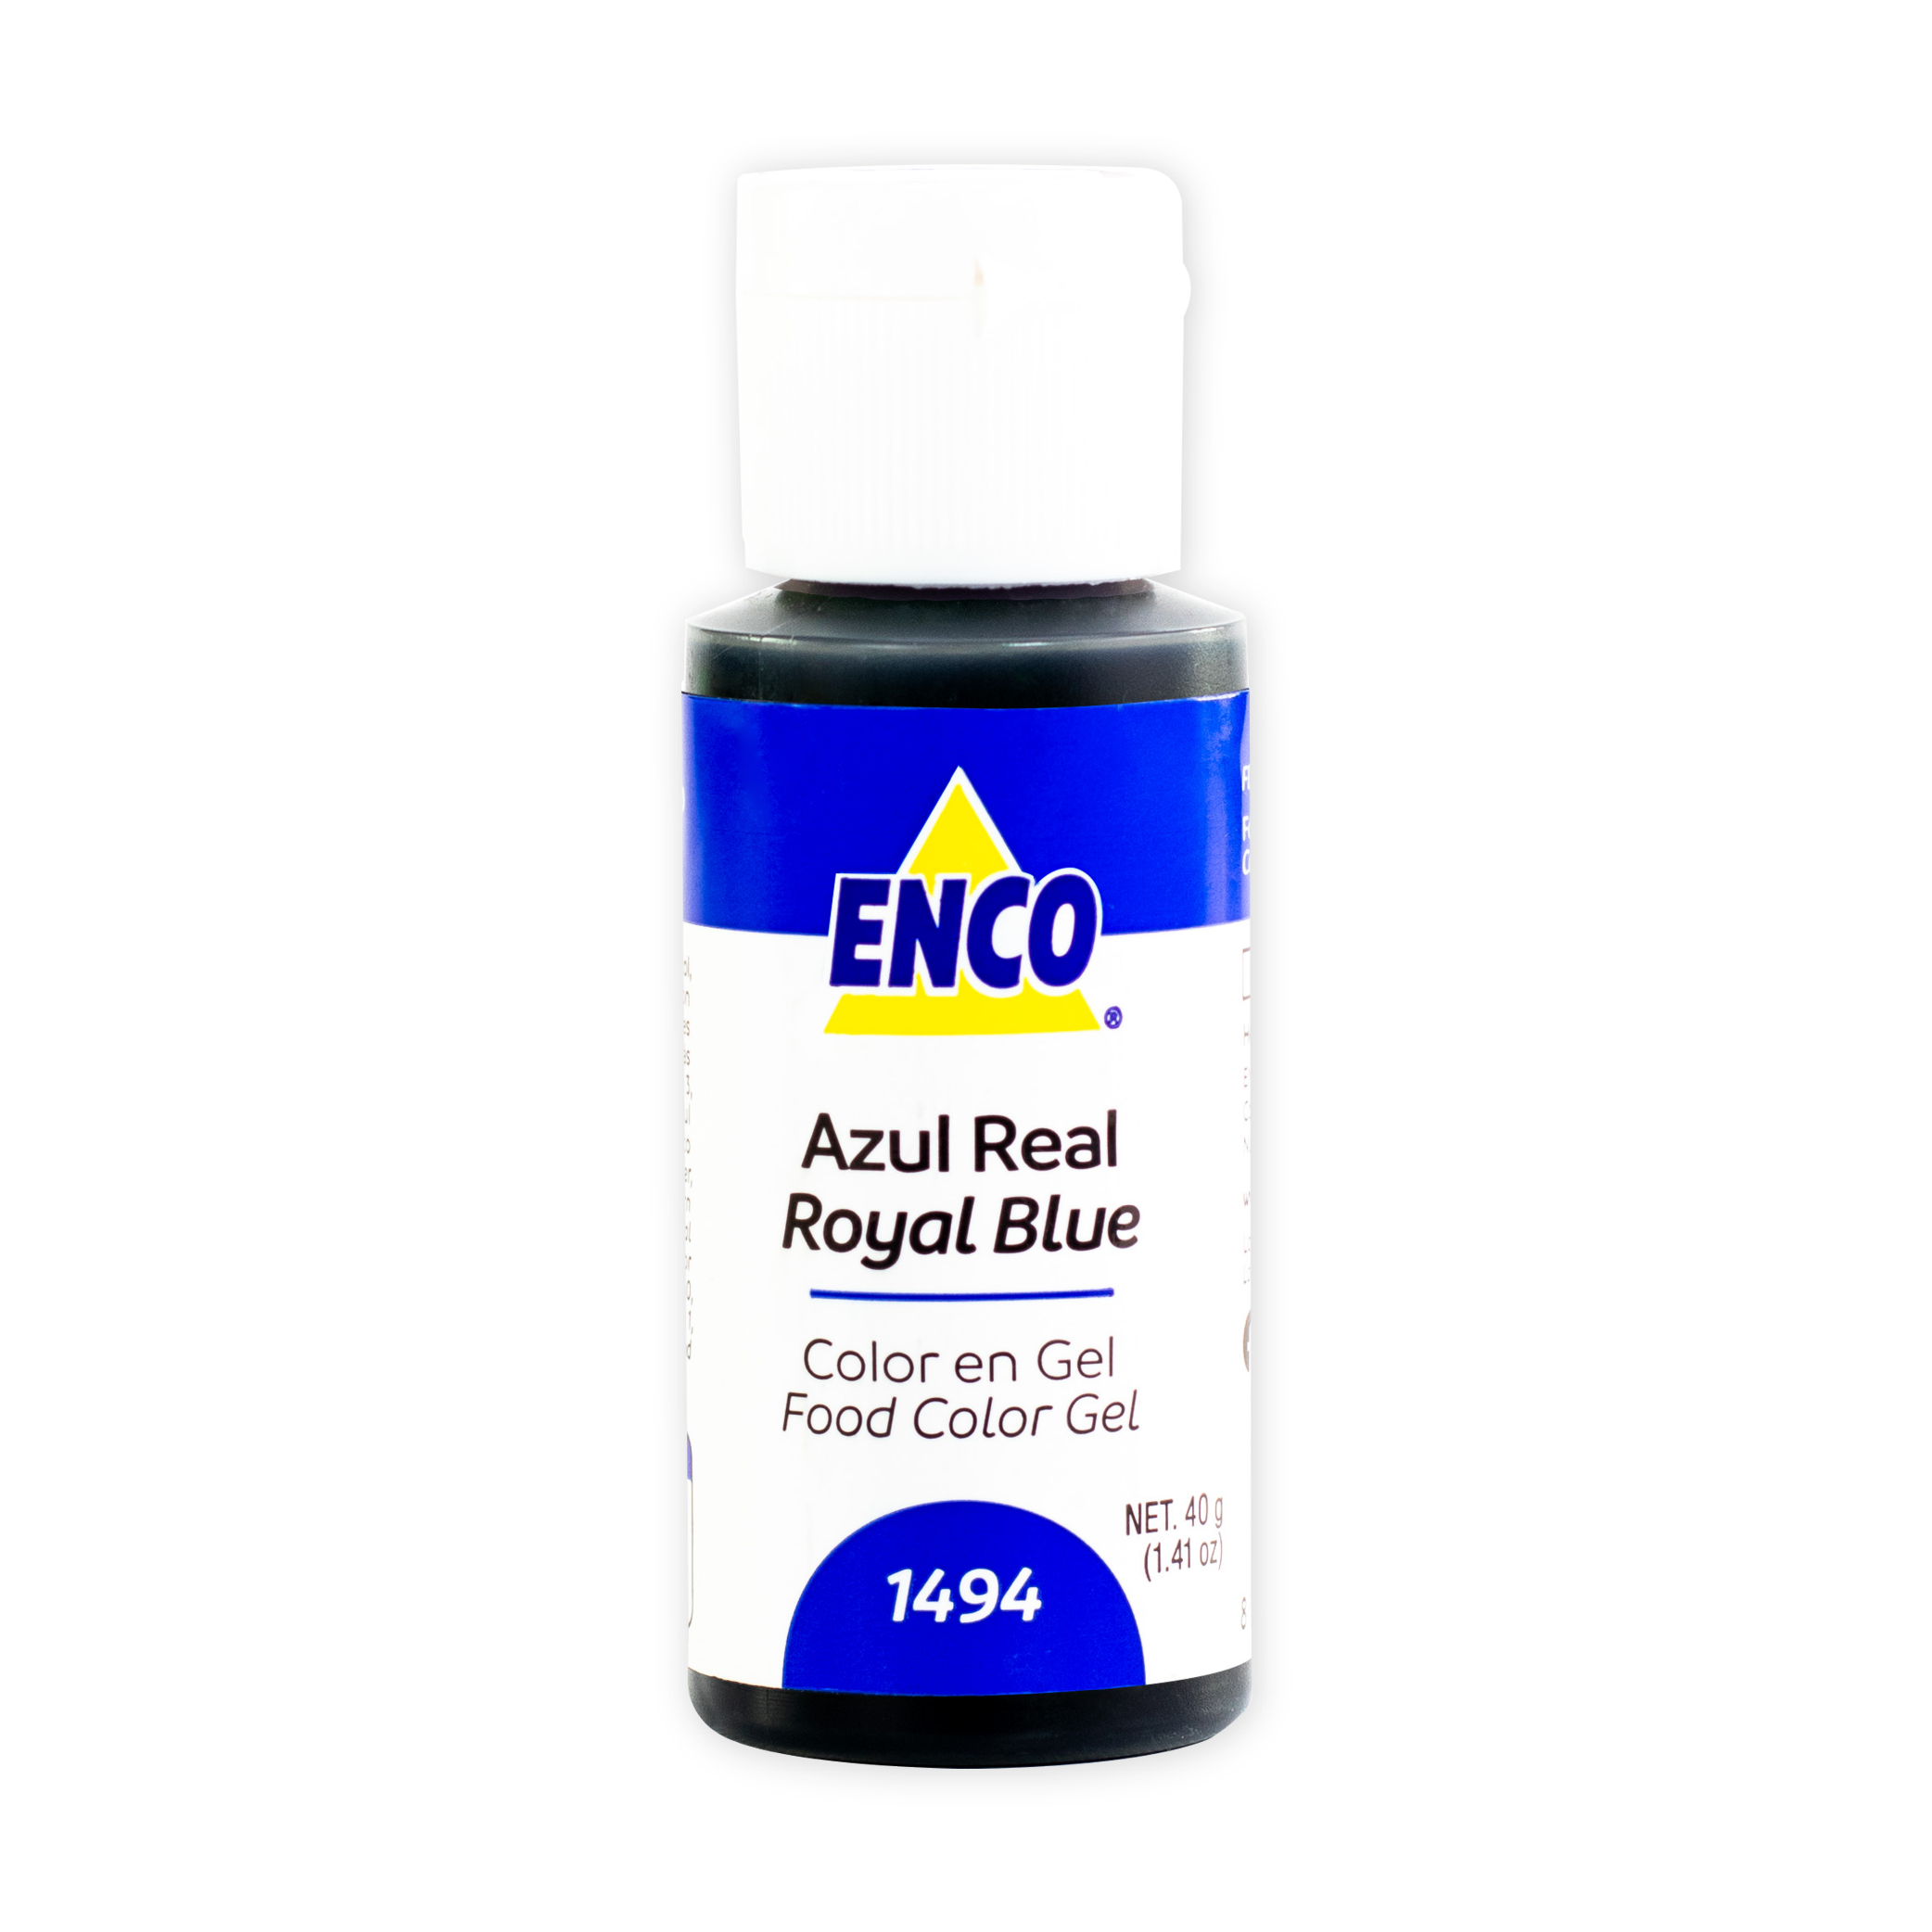 Colorante alimentario de origen natural 40 g - Azul